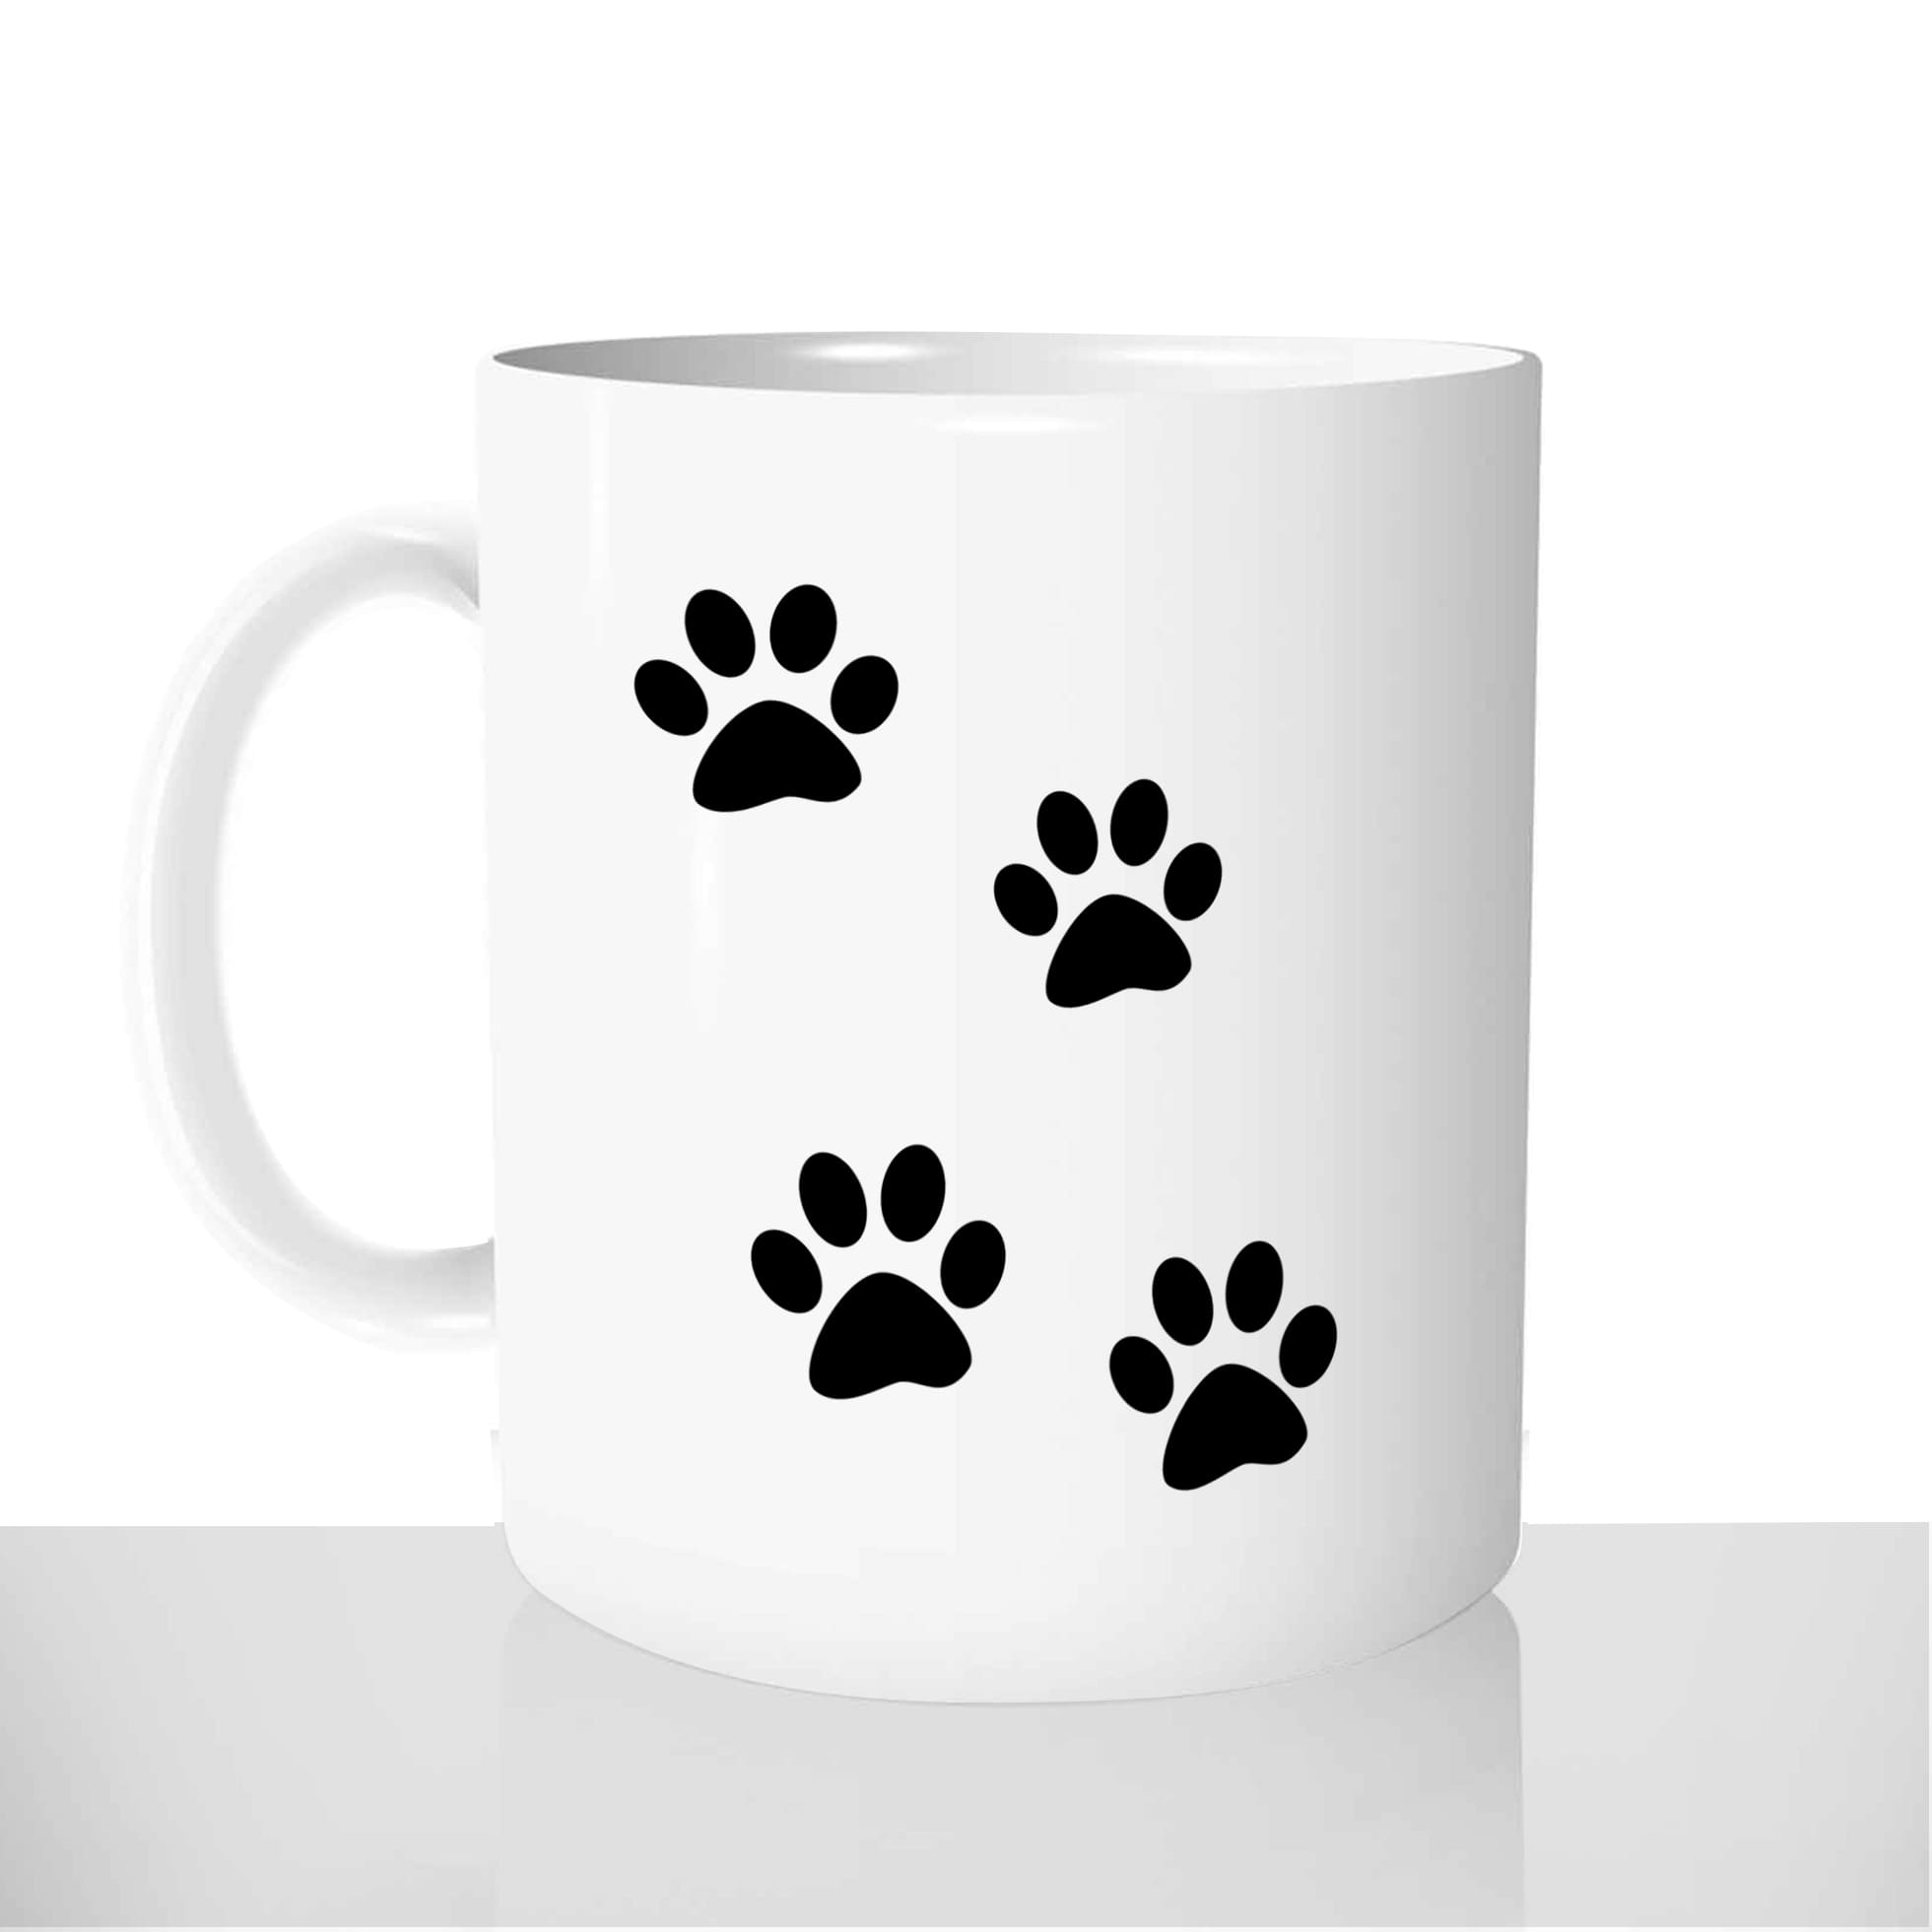 mug-blanc-brillant-personnalisé-offrir-bpatte-animal-chat-chien-anniversaire-noel-amis-fun-personnalisable-idée-cadeau-original